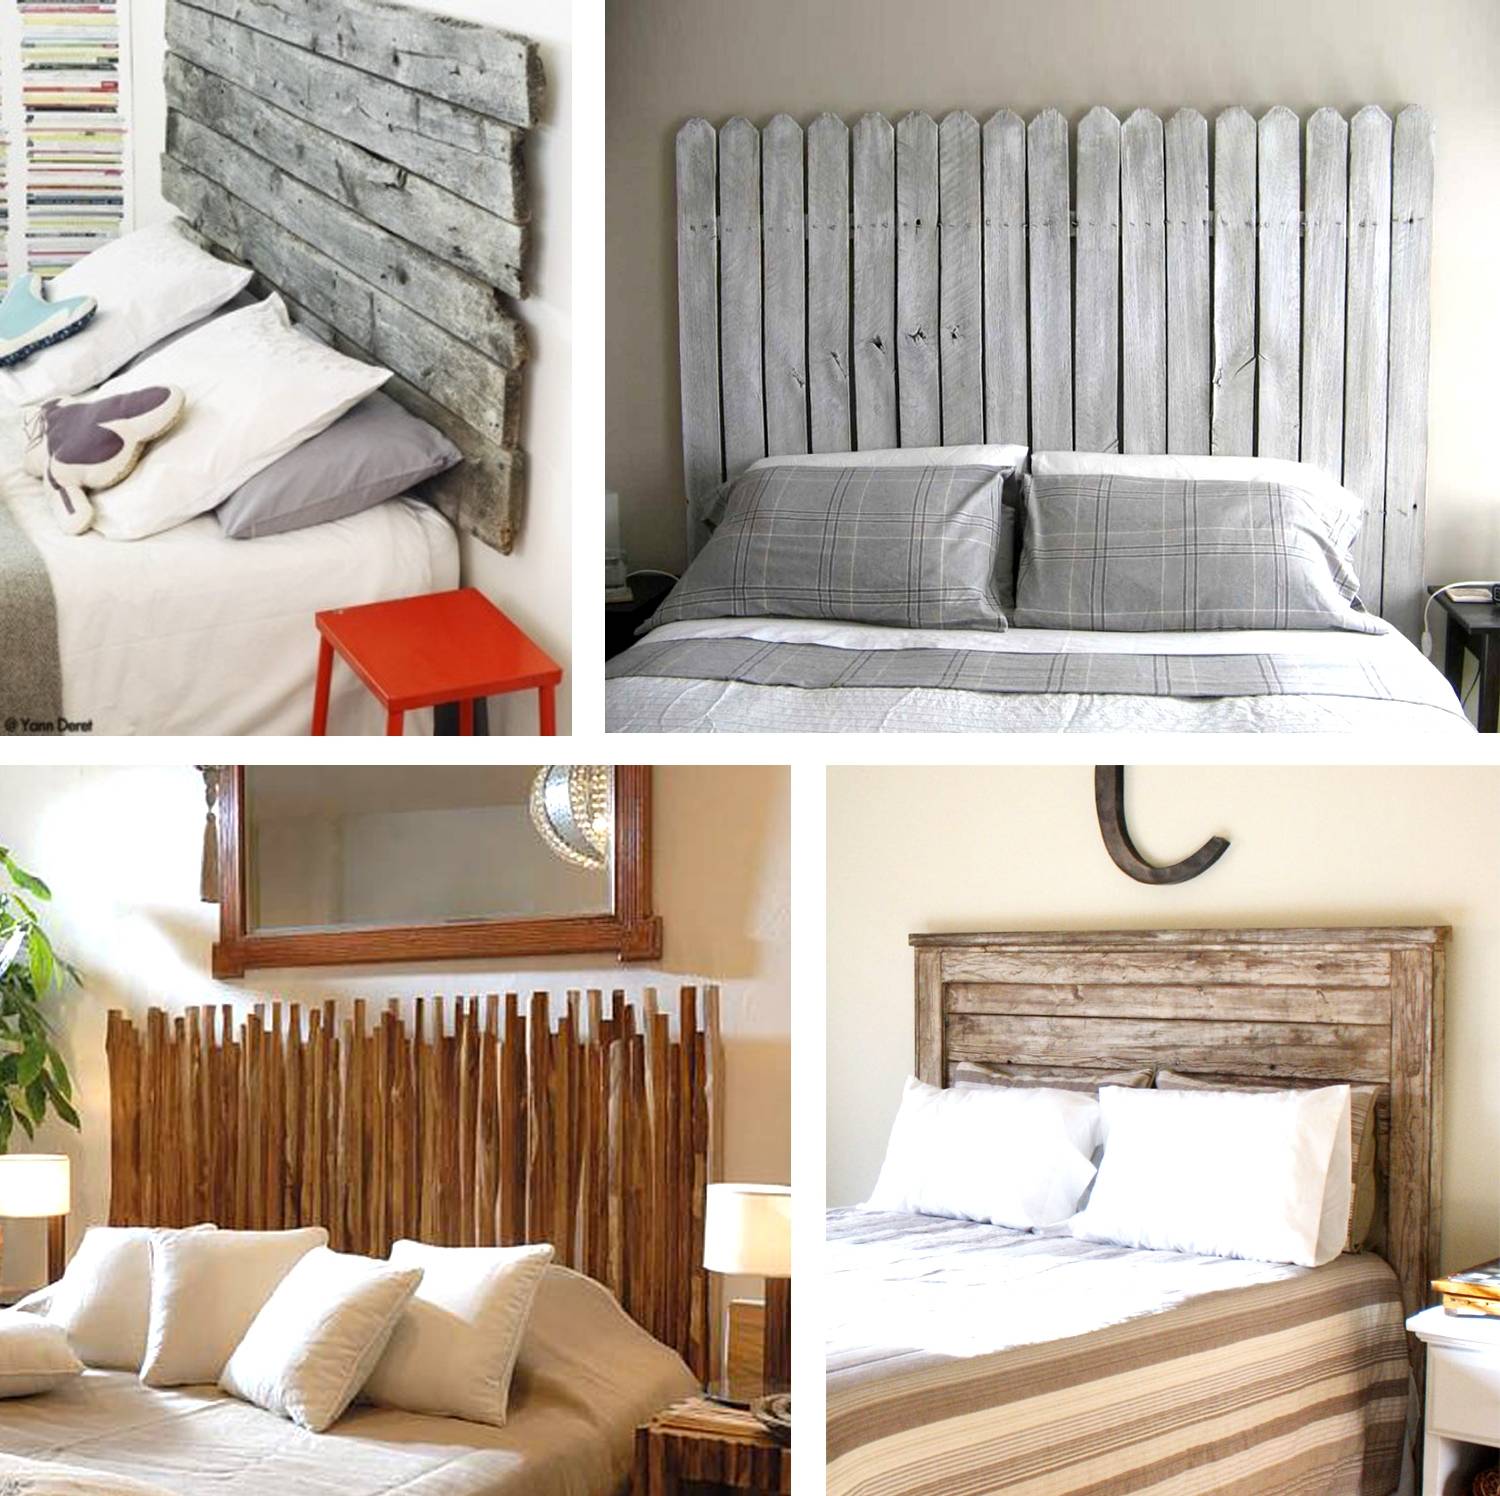 Как оформить стену у изголовья кровати в спальне своими руками: декор и молдинги напротив кровати